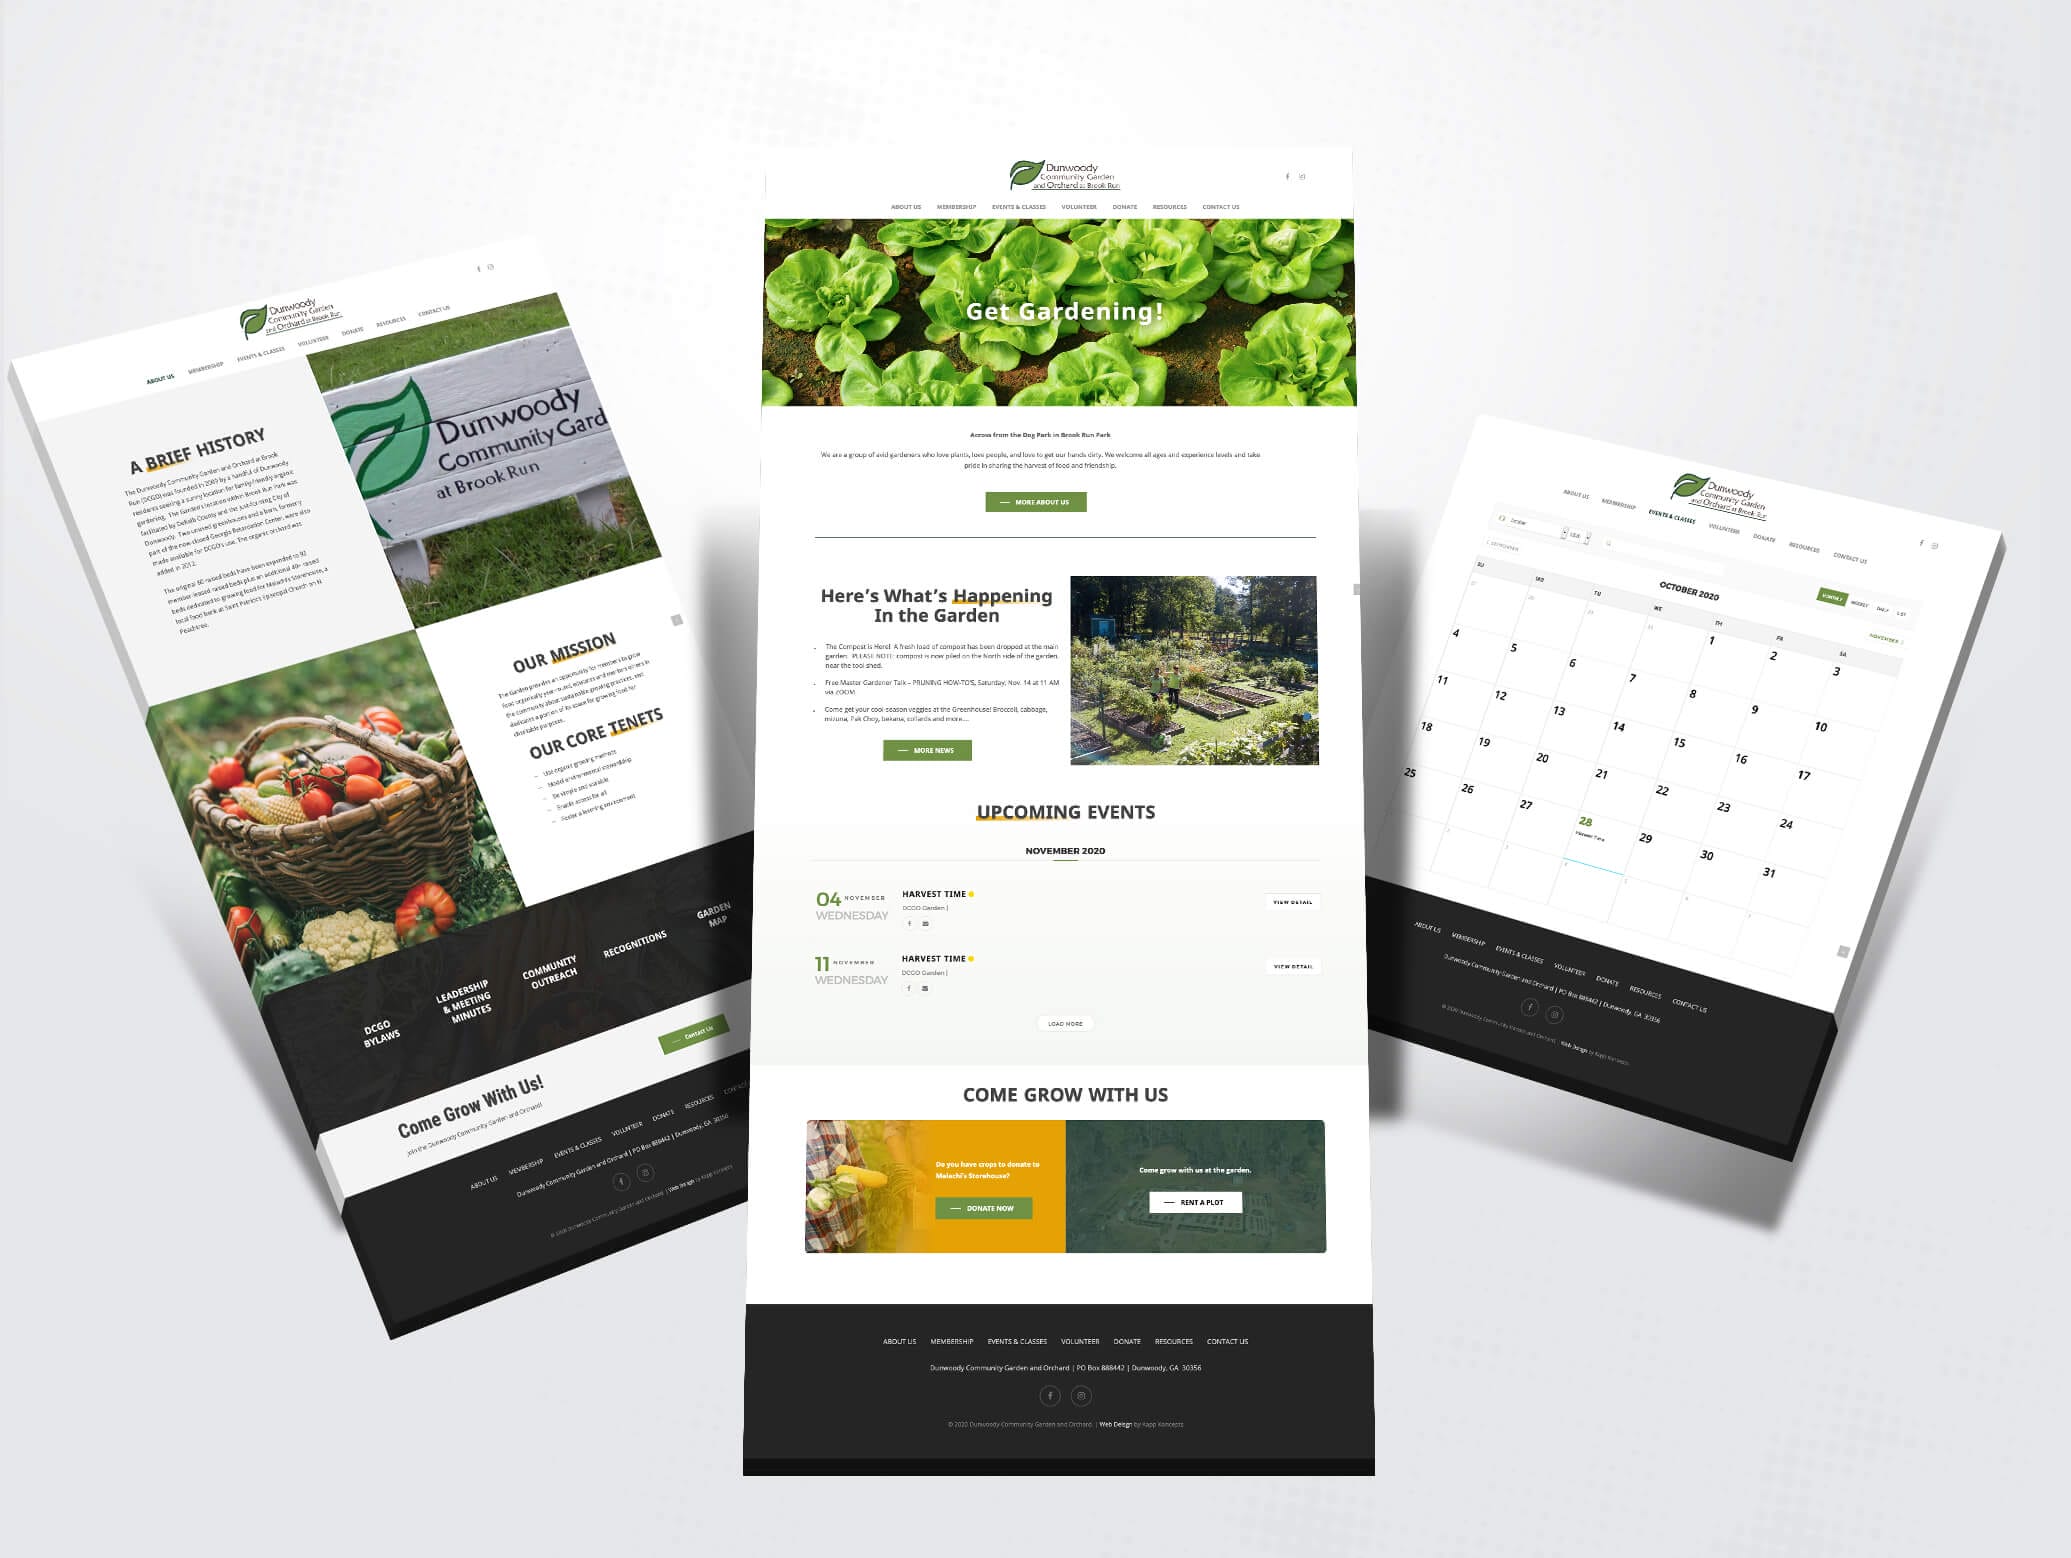 dunwoody community garden website design images